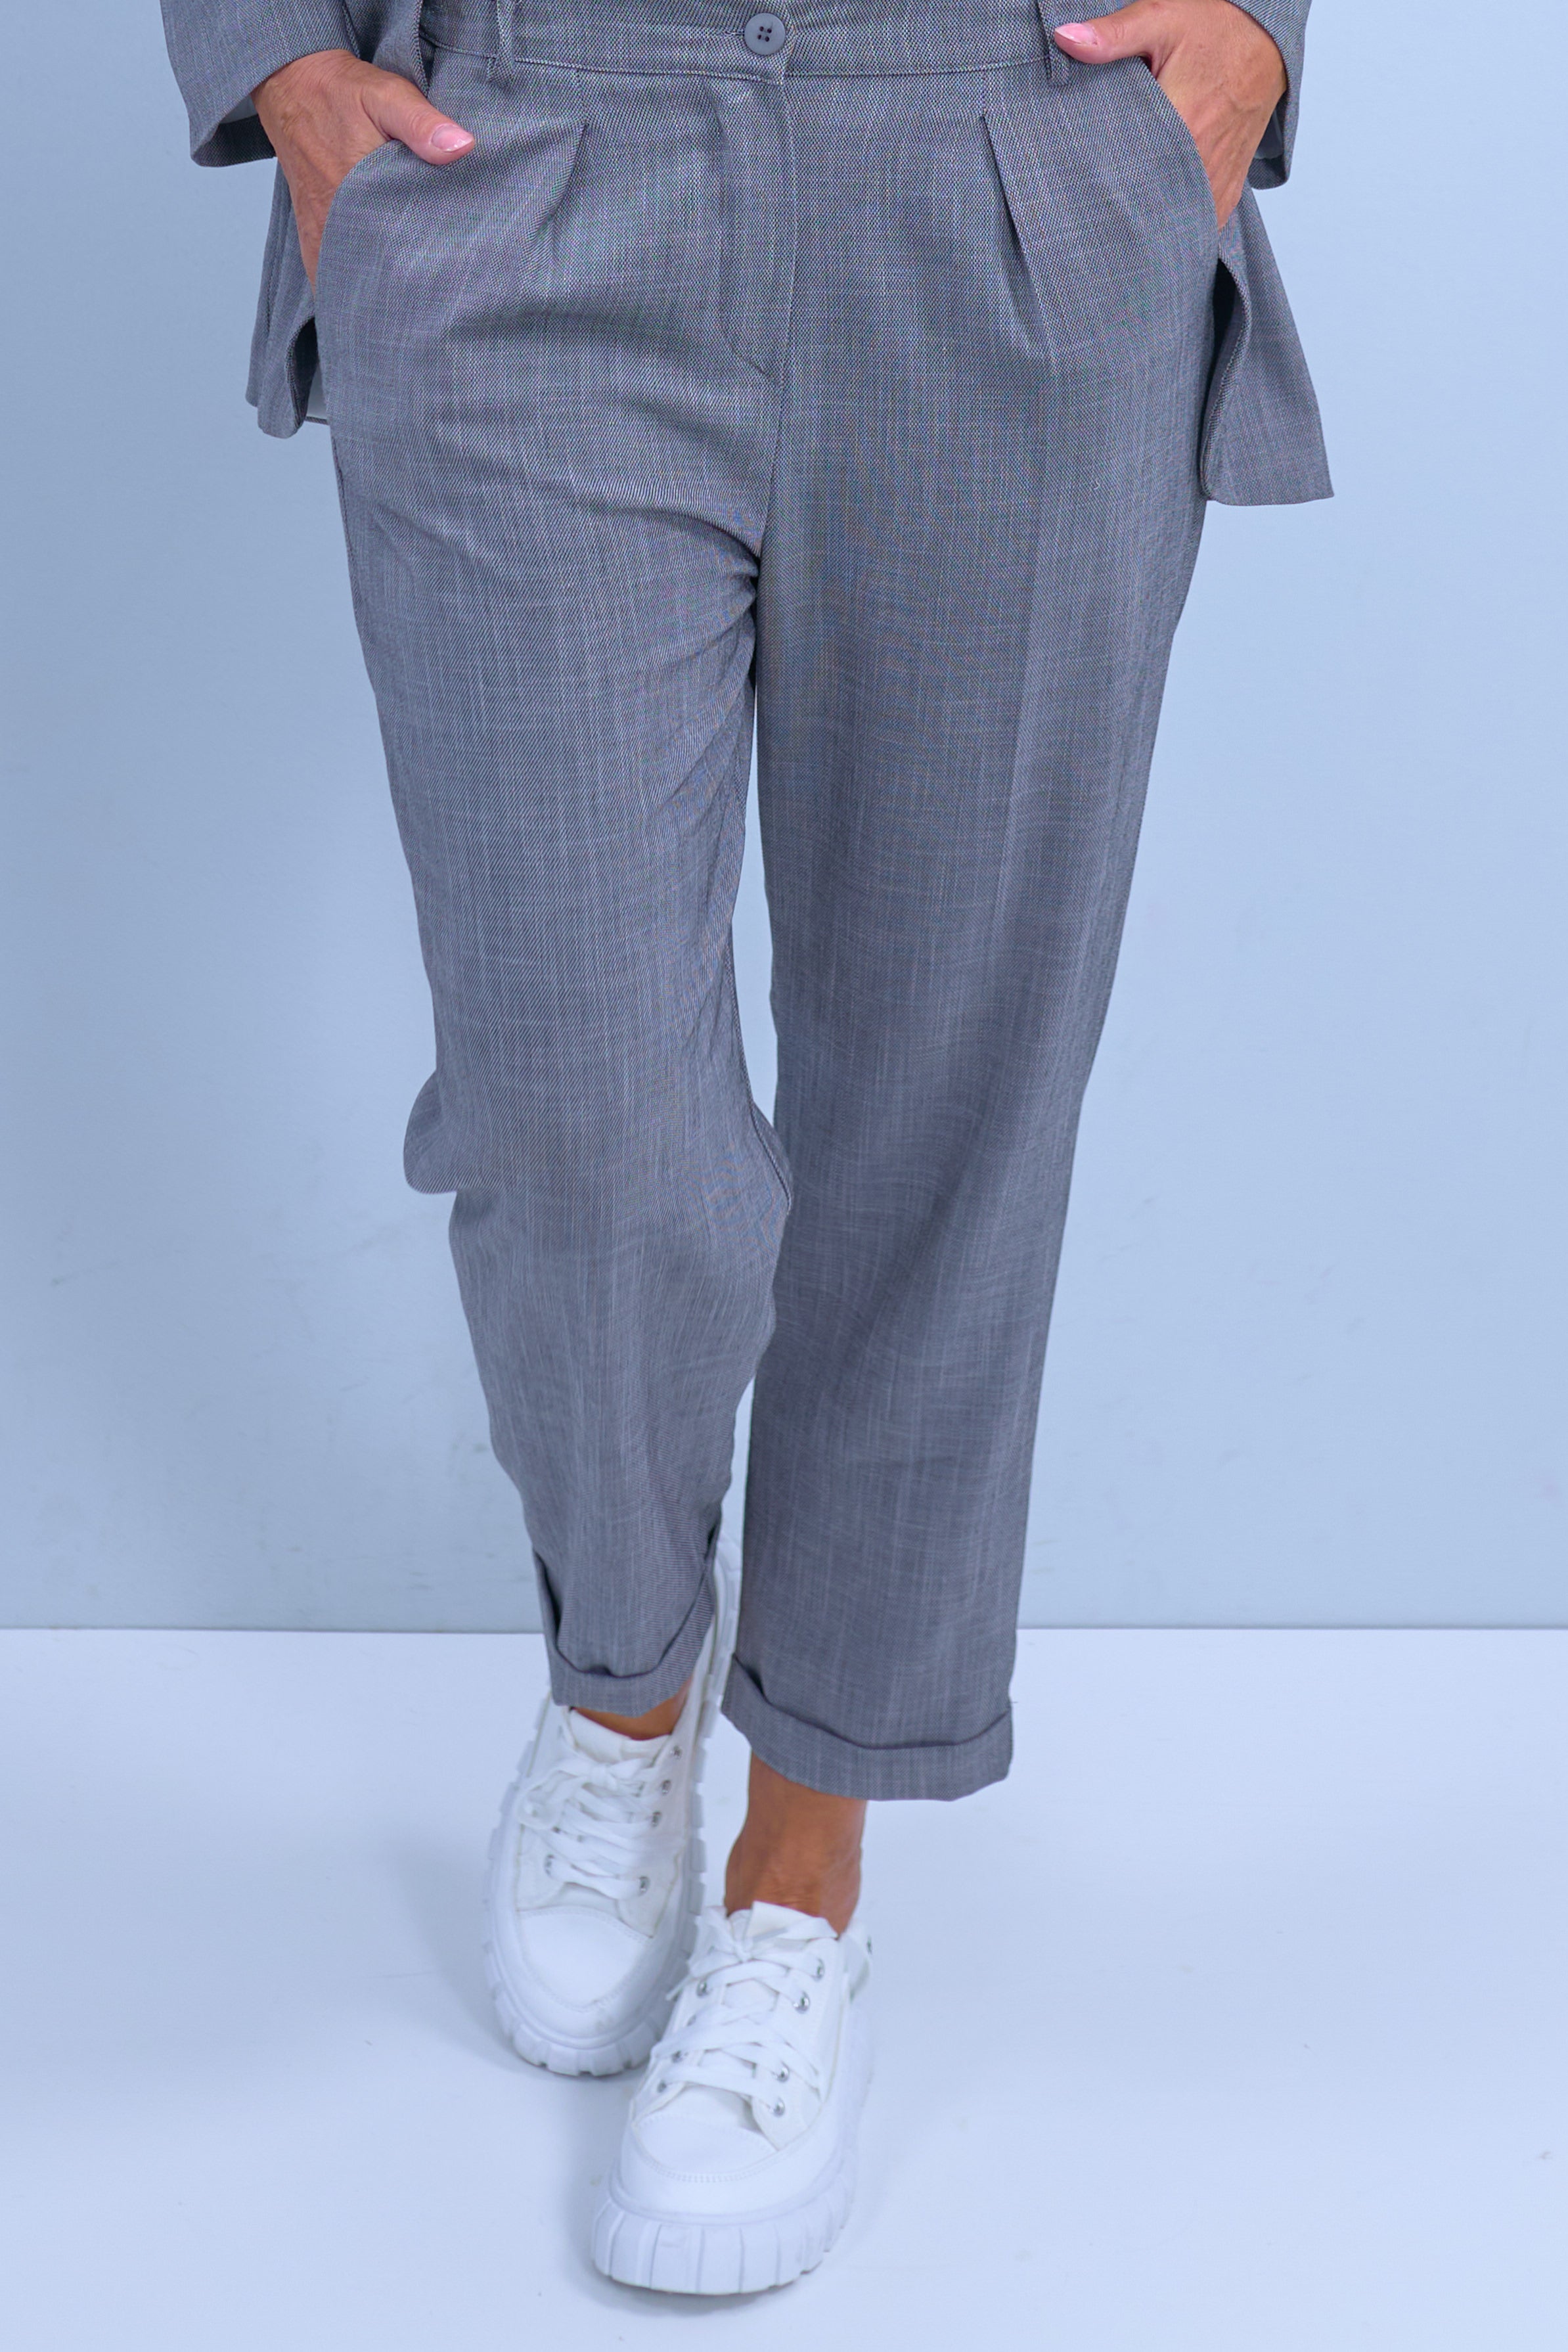 Damen Anzughose mit Bundfalte und Aufschlag grau Trends & Lifestyle